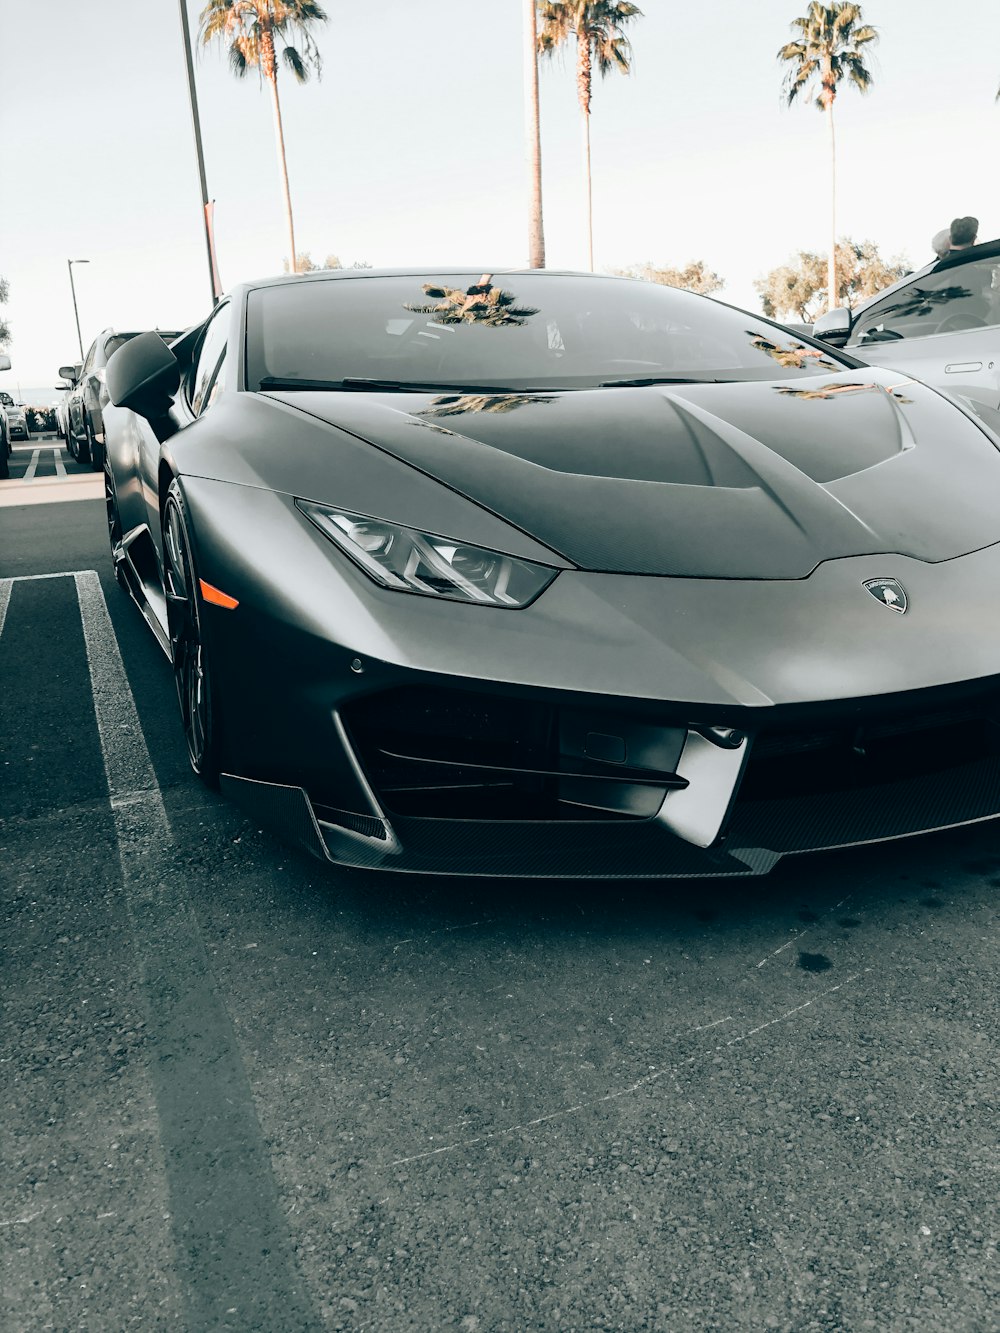 Lamborghini Aventador negro estacionado en el estacionamiento durante el día